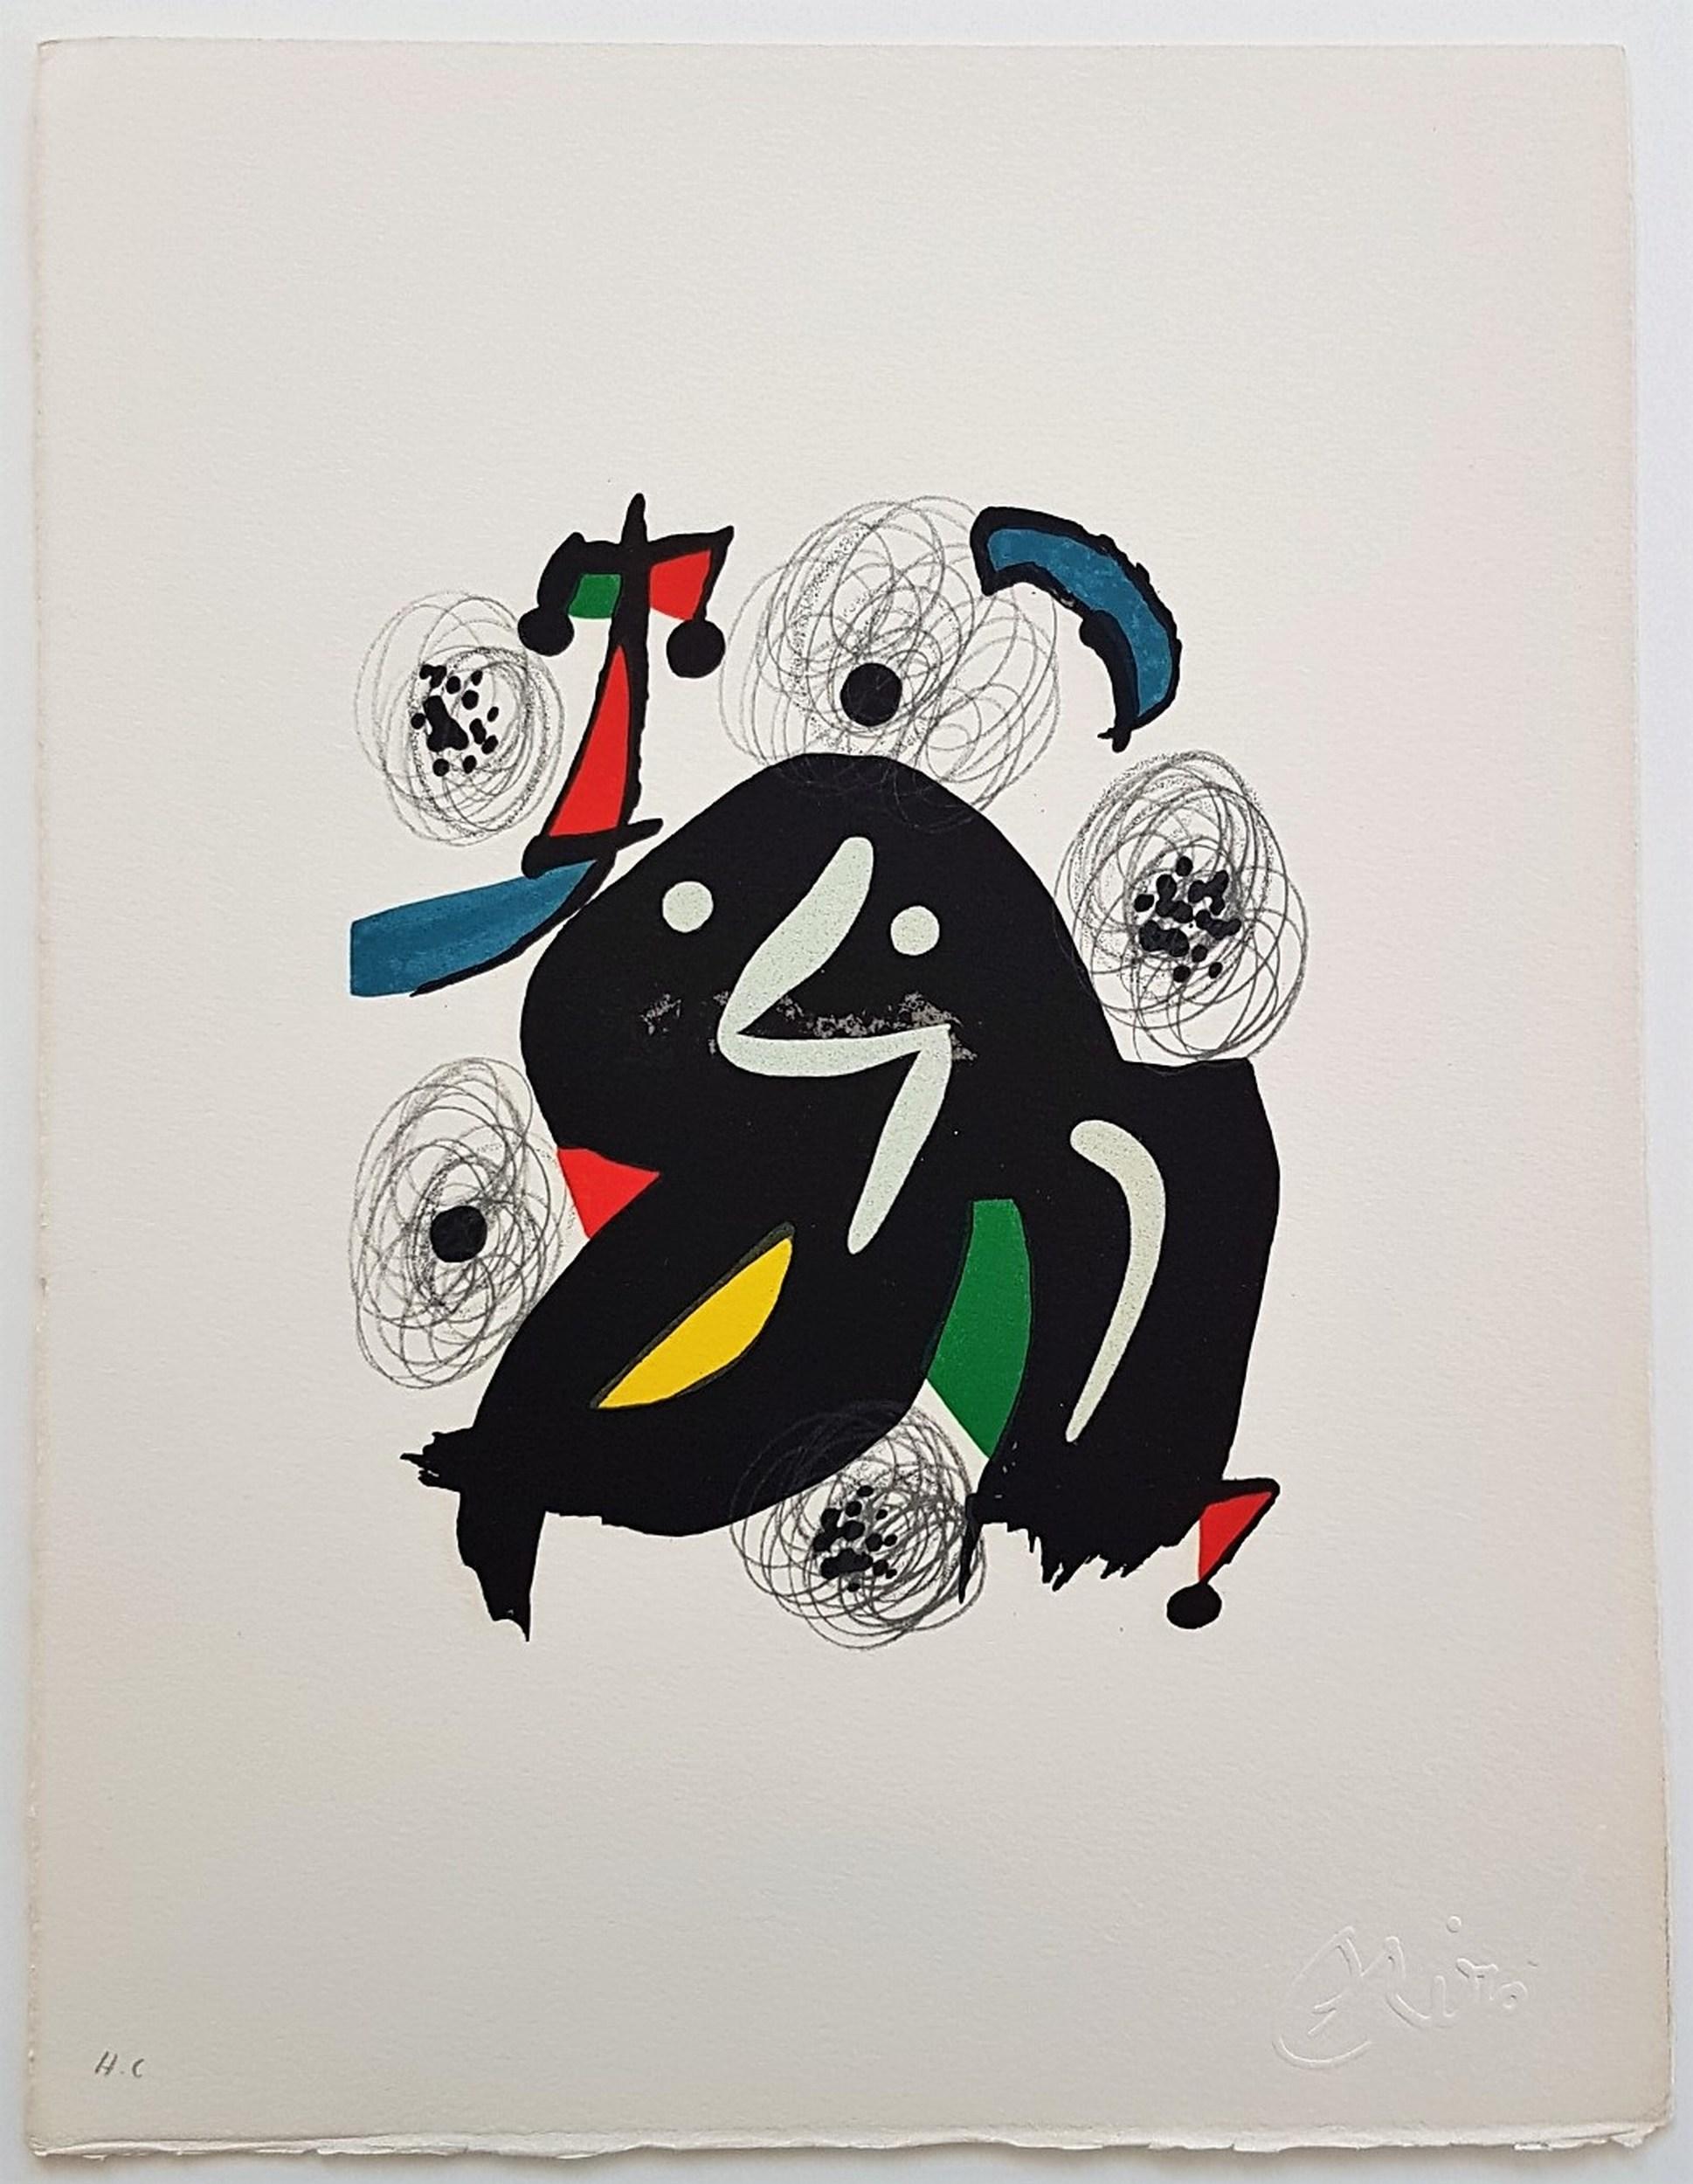 La Mélodie Acide - 4 (50% DE RÉDUCTION SUR LE PRIX DE LISTE & 10$ DE RÉDUCTION SUR LES FRAIS DE LIVRAISON - EN TEMPS LIMITÉ ONLY) - Print de Joan Miró